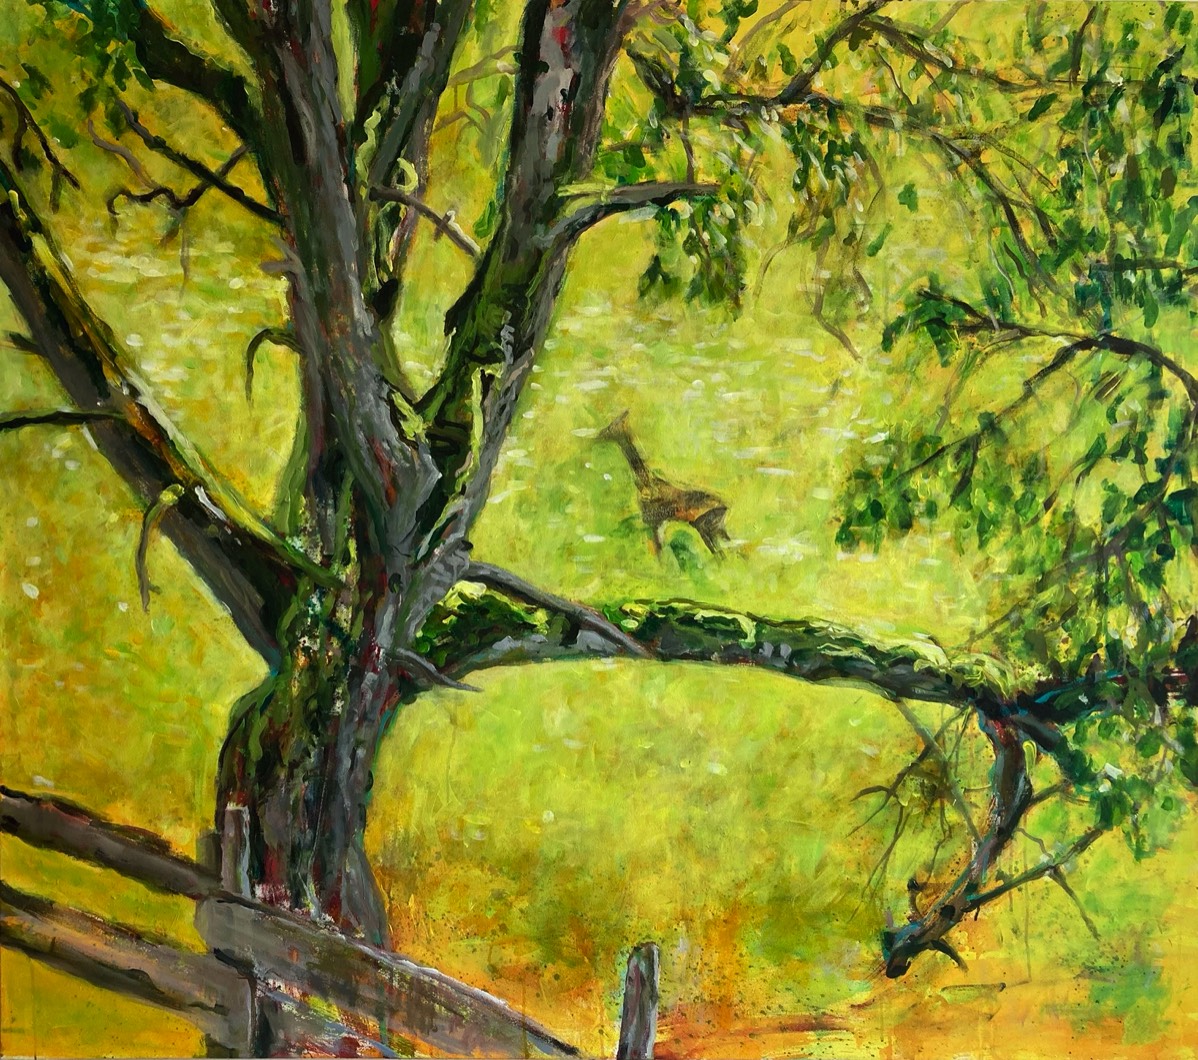 Das Reh und der Baum, Leinwand auf Acryl, 140x160